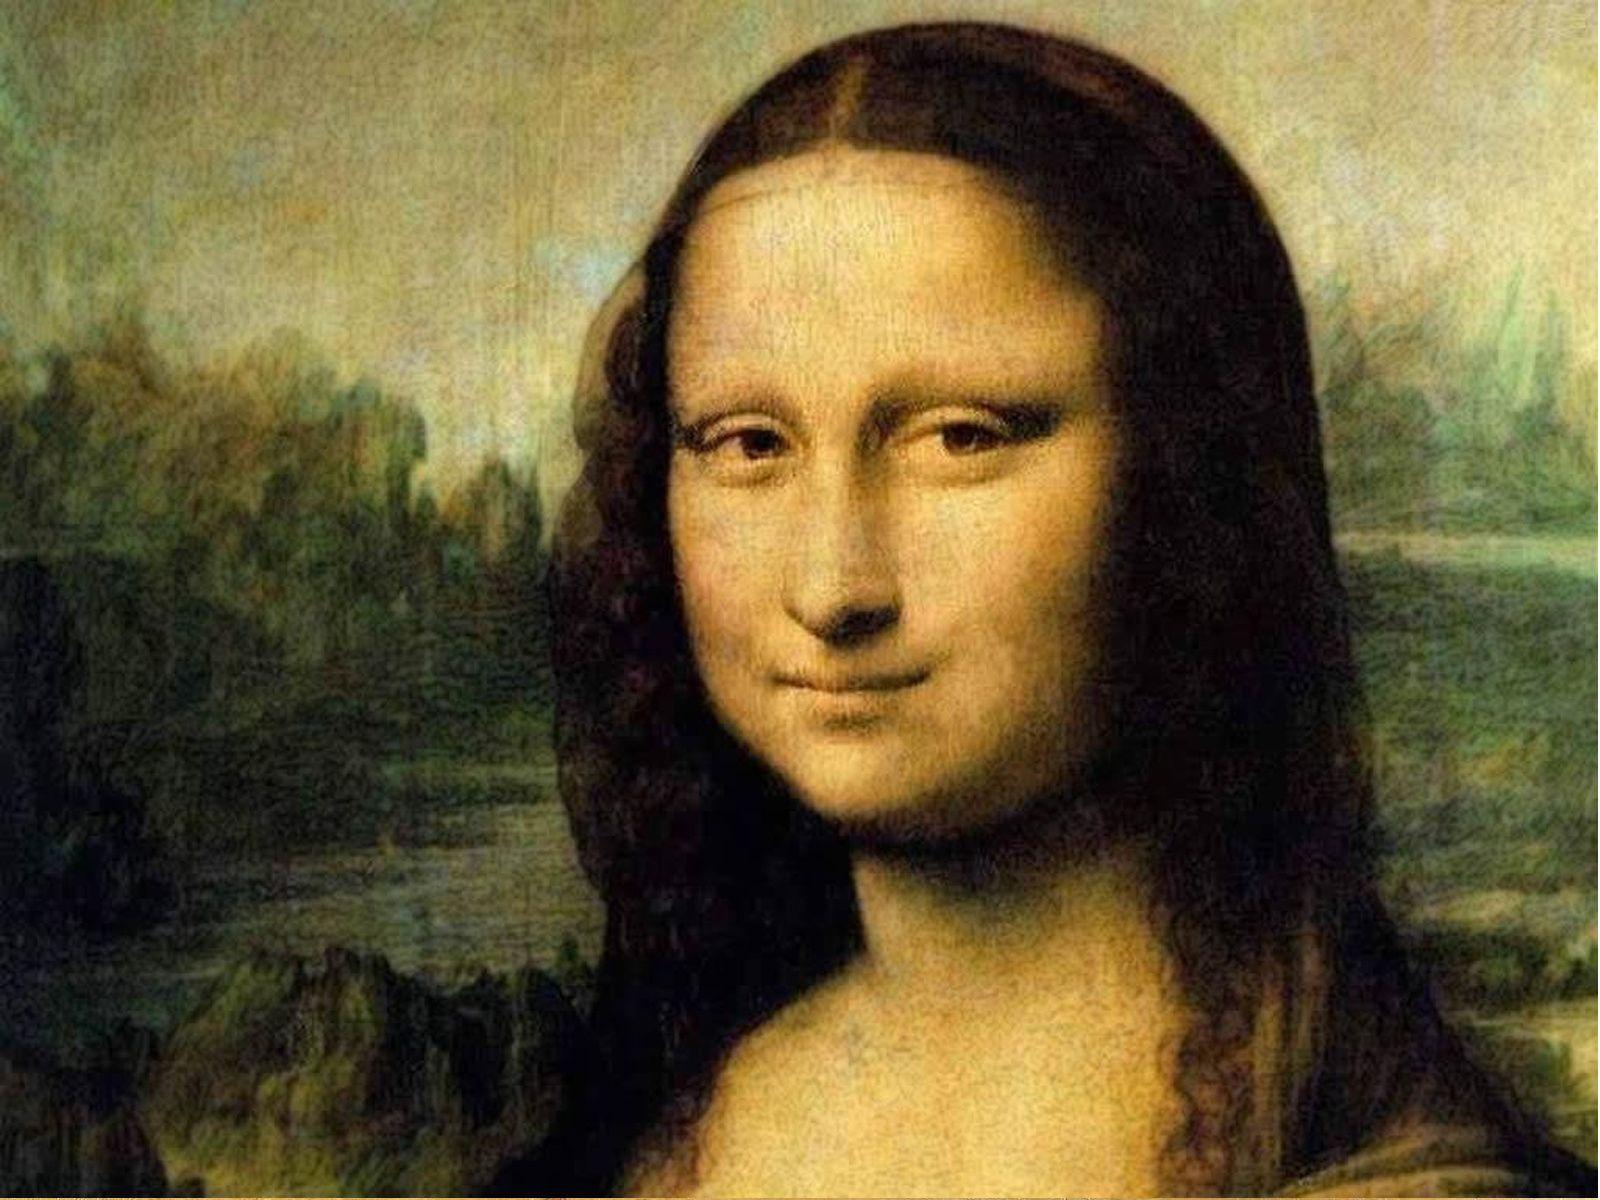 دانلود زیباترین تصویر هنری لئوناردو داوینچی با عنوان مونالیزا 